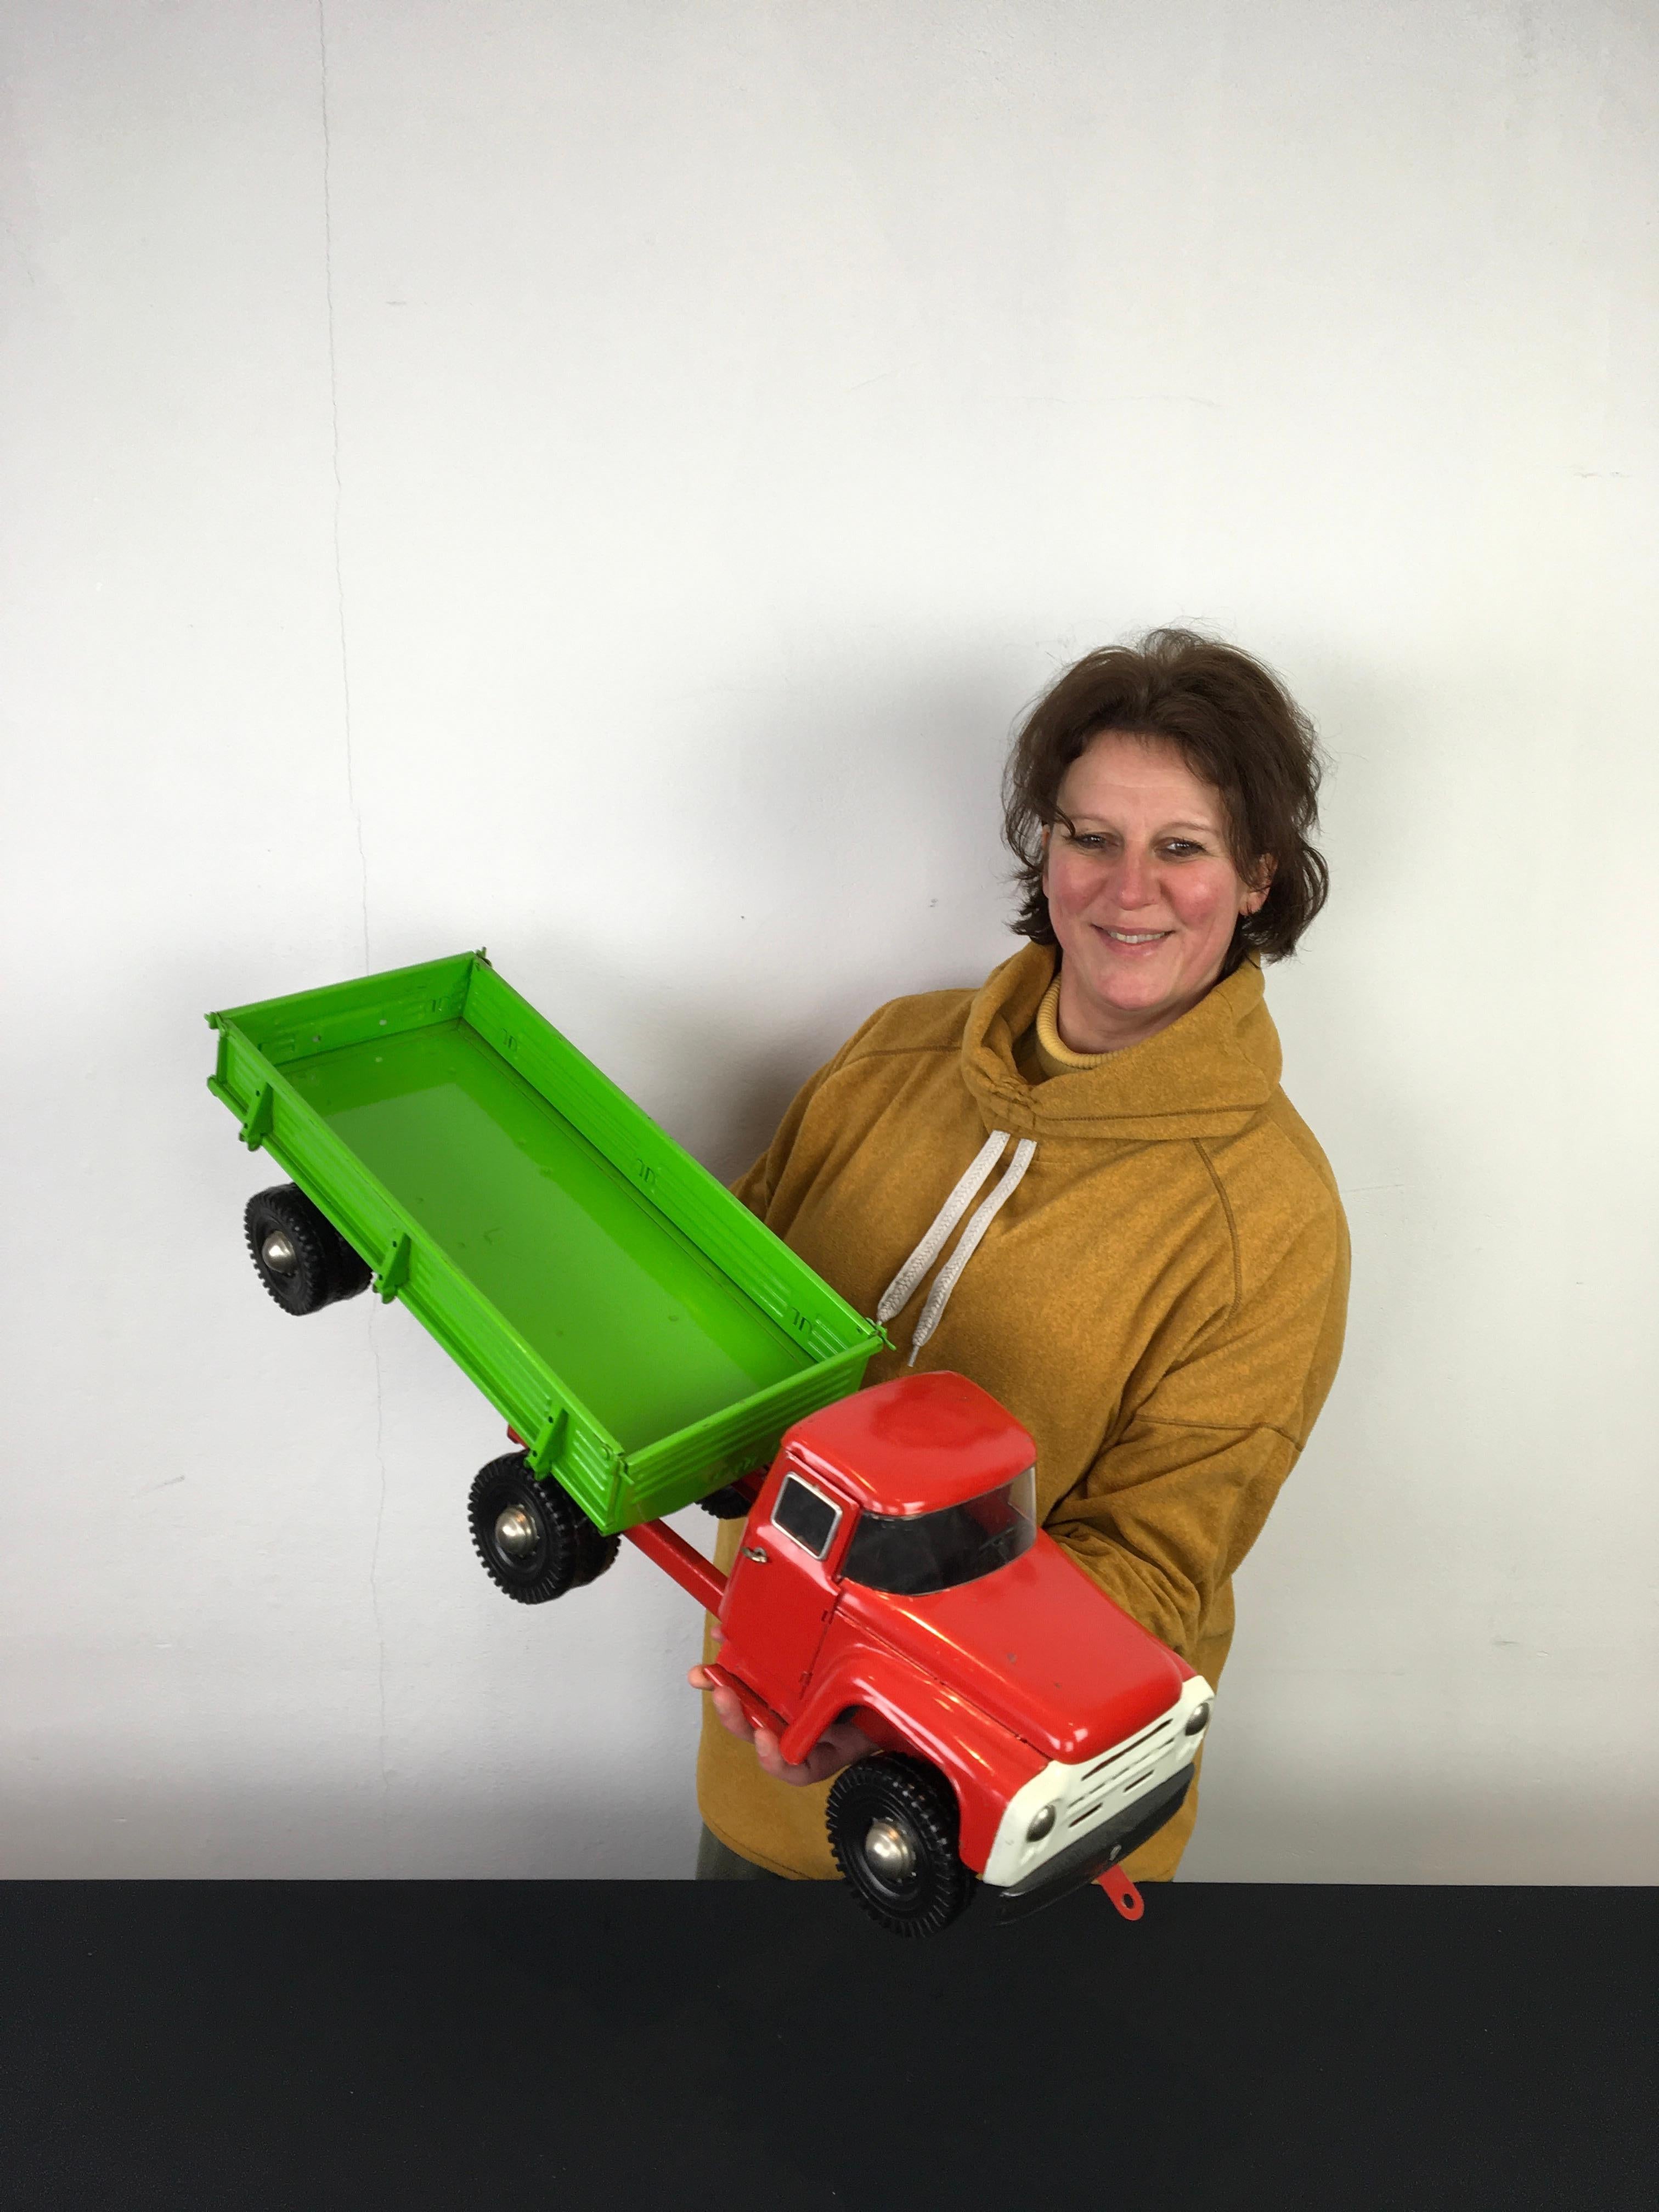 Grand jouet camion semi-remorque Zil. 
Un grand camion-jouet vintage en métal avec une cabine rouge et une remorque vert vif. La couleur et la peinture sont encore d'origine. Fabriqué en Russie dans les années 1980, en 1983 ce qui est indiqué sur la